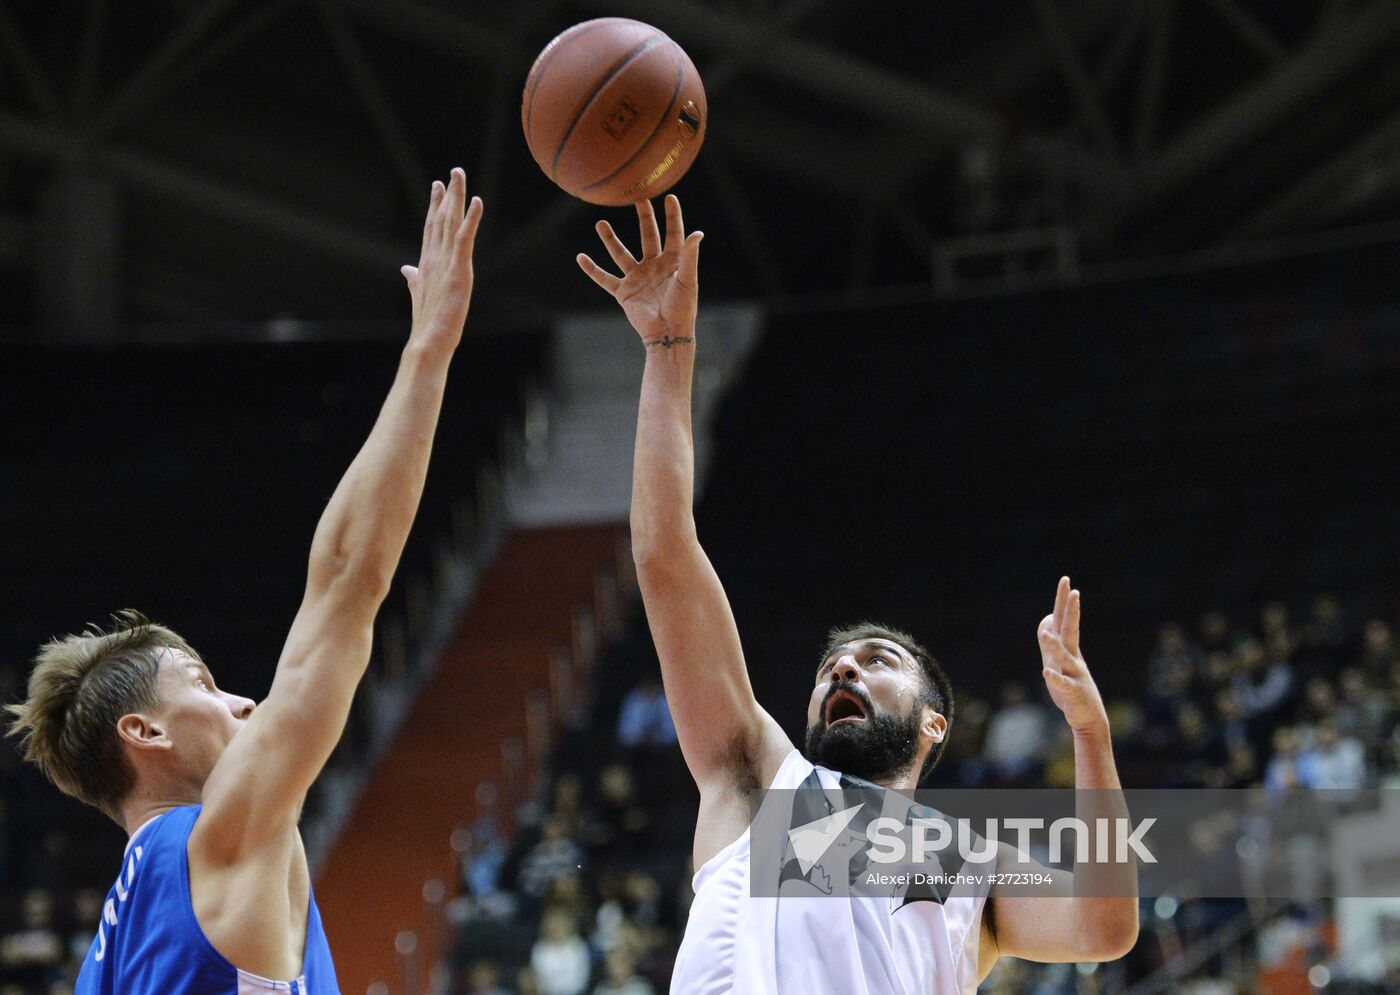 Eurocup Basketball. Zenit vs. PAOK